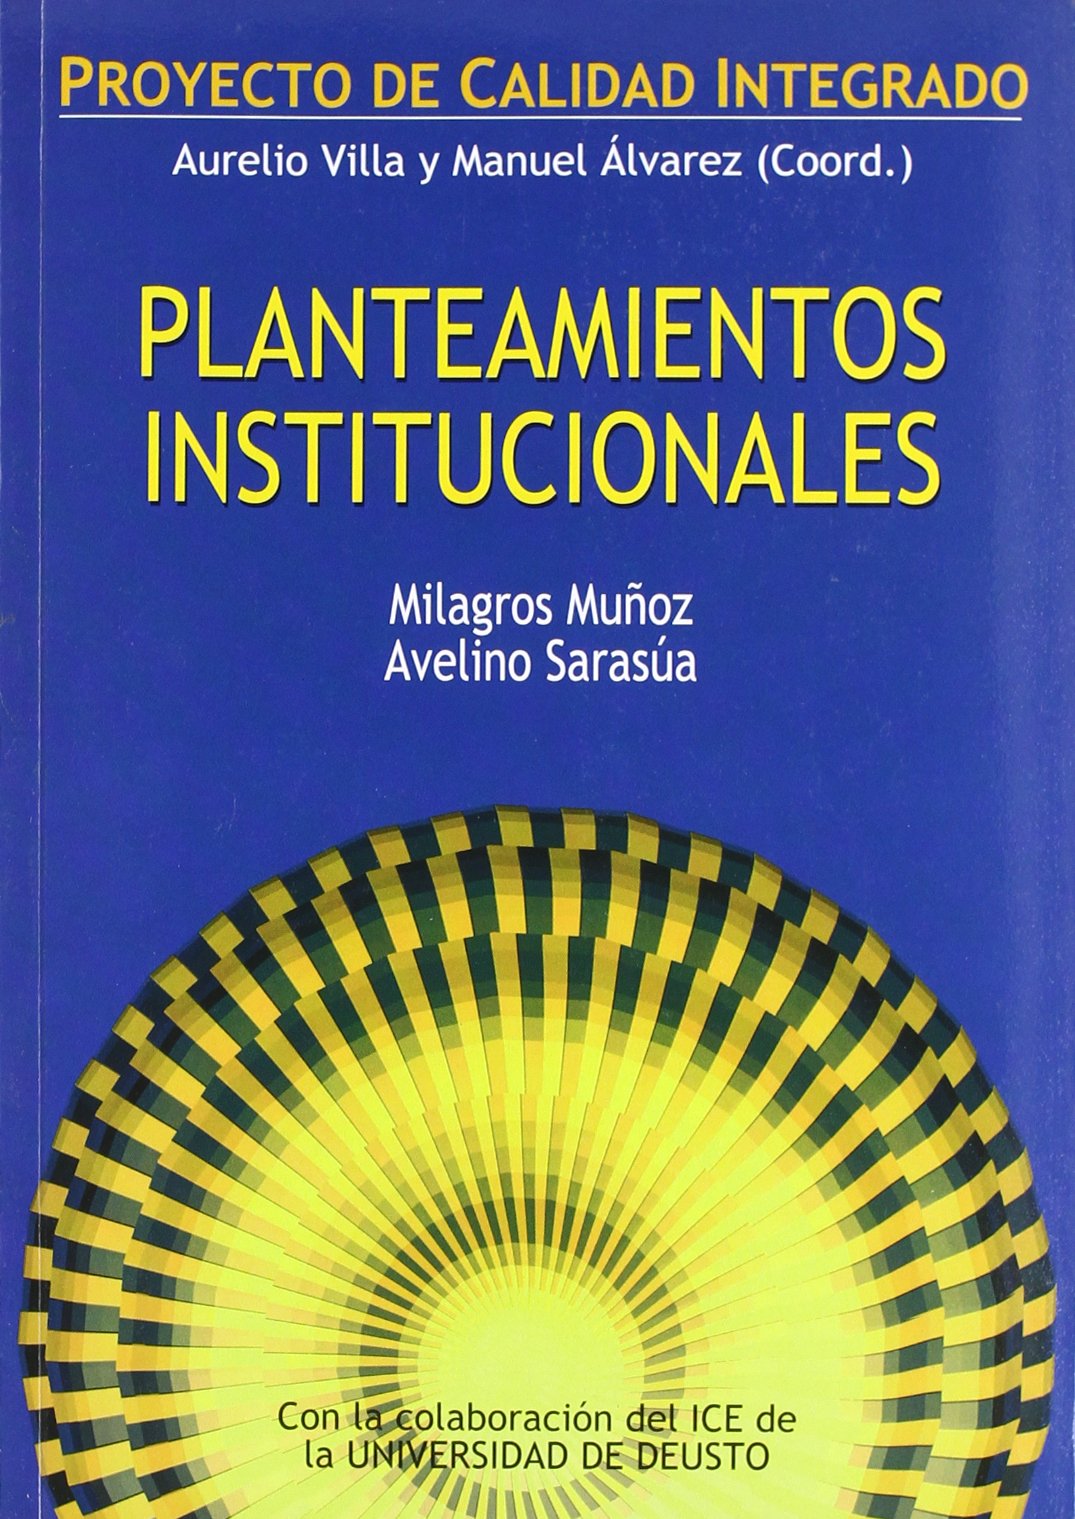 Imagen de portada del libro Planteamientos institucionales